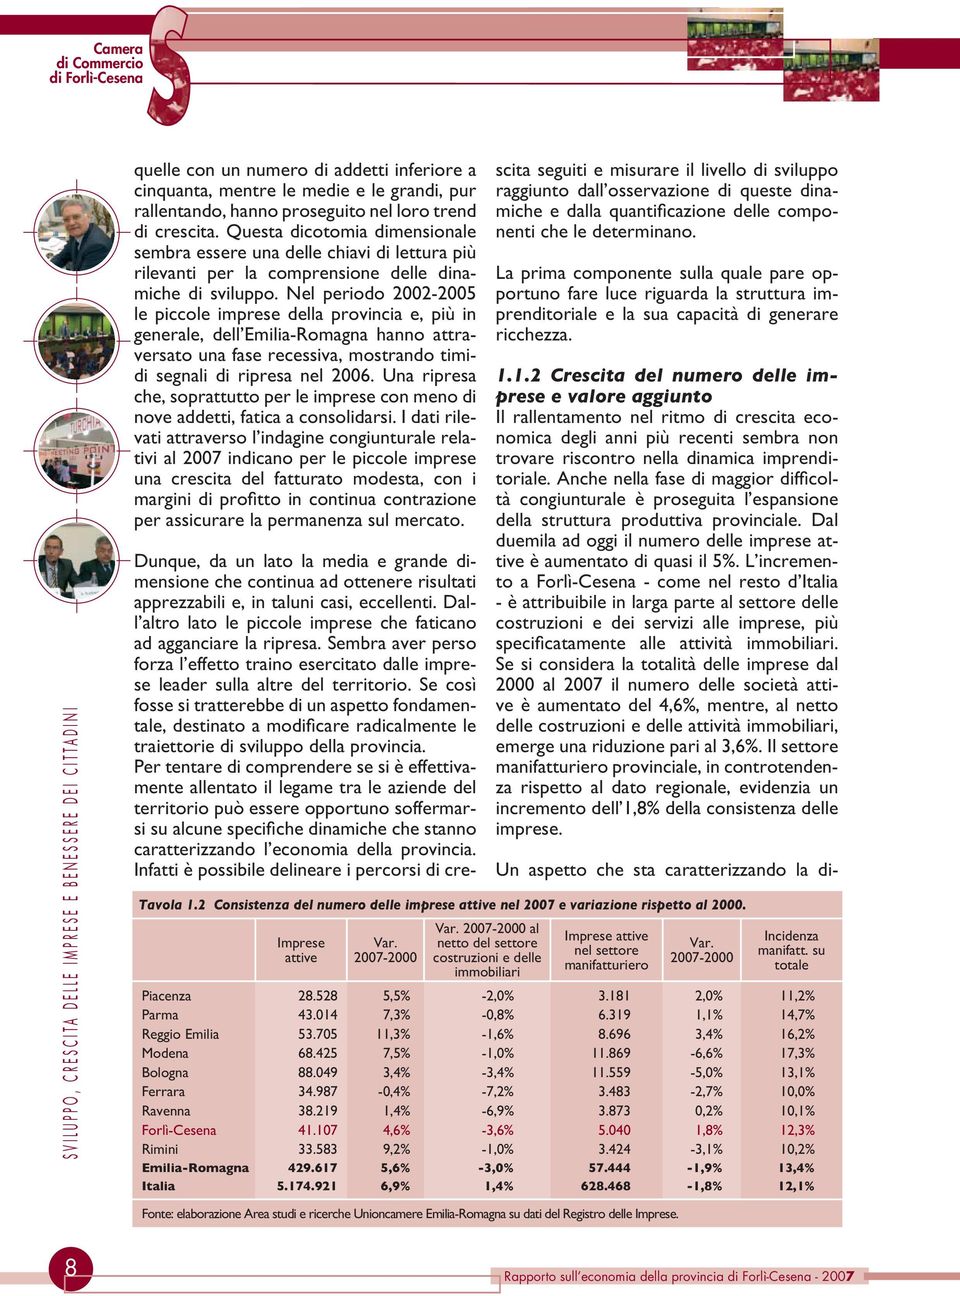 Nel periodo 2002-2005 le piccole imprese della provincia e, più in generale, dell Emilia-Romagna hanno attraversato una fase recessiva, mostrando timidi segnali di ripresa nel 2006.